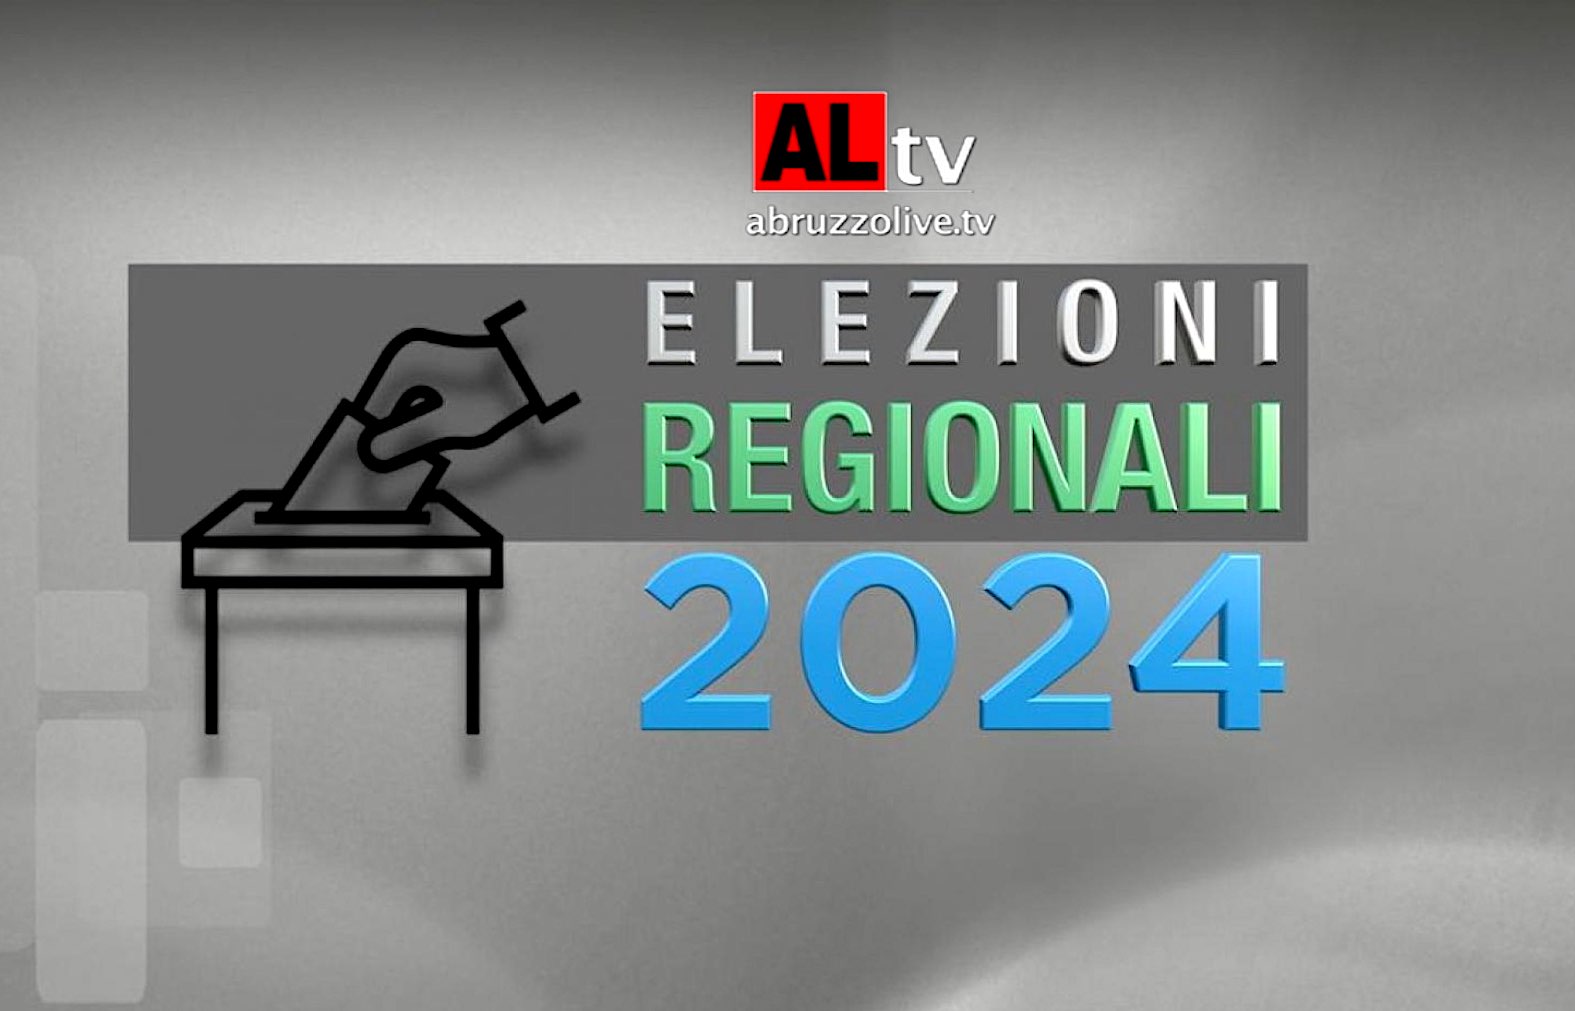 Elezioni regionali Abruzzo del 10 marzo: come si vota. I facsimili delle schede per provincia